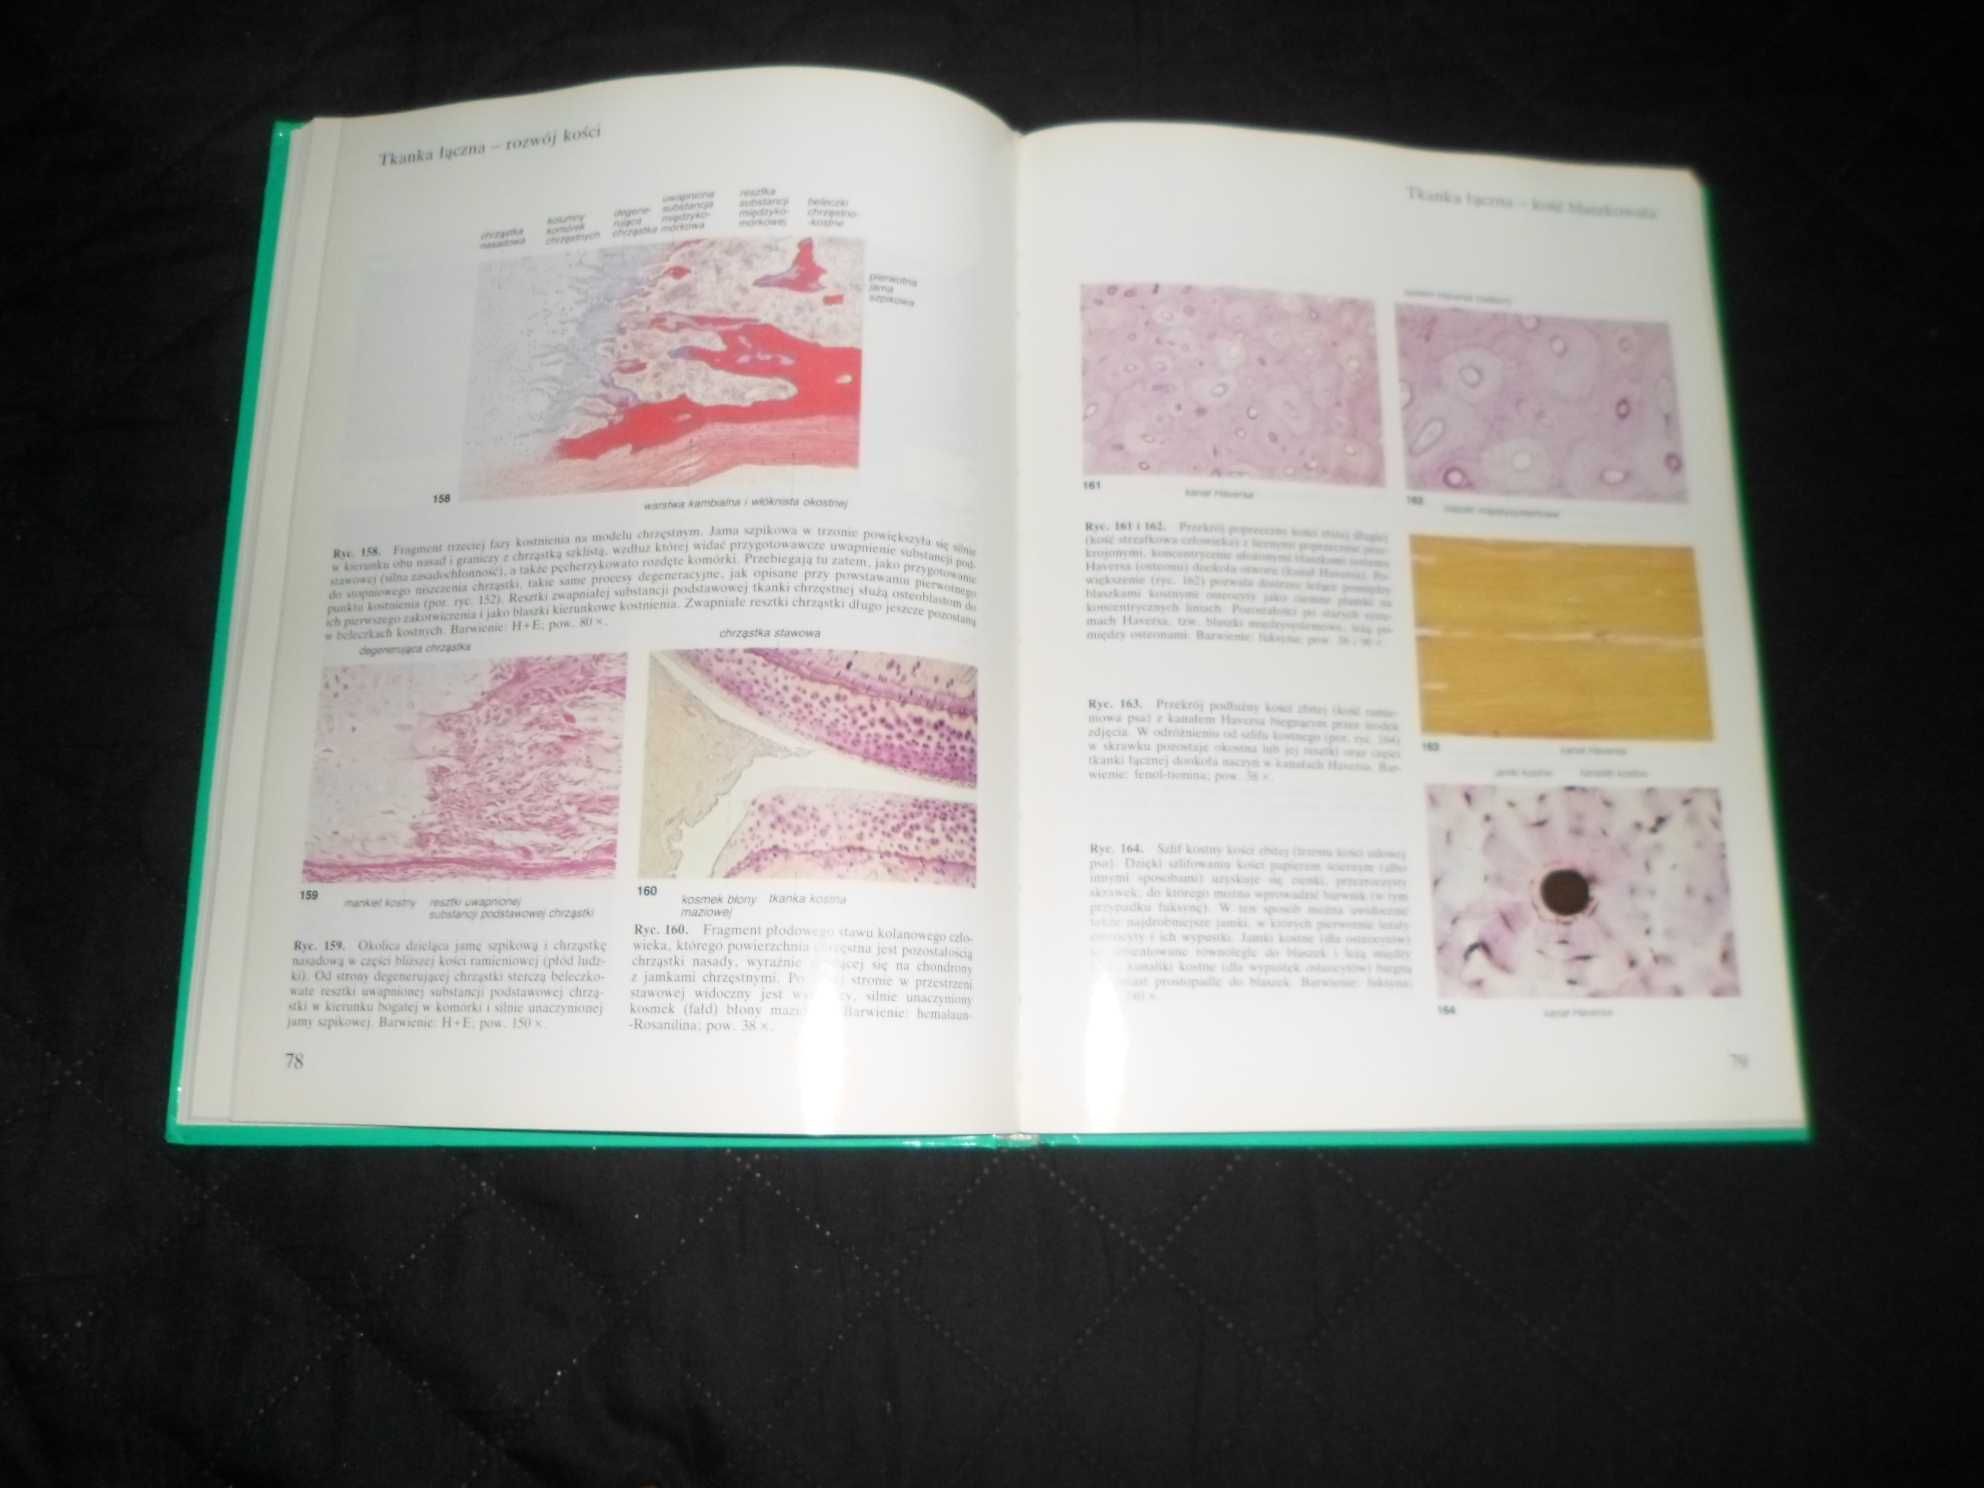 Sobotta/Hammersen - Histologia Atlas cytologii i histologii Frithjofa